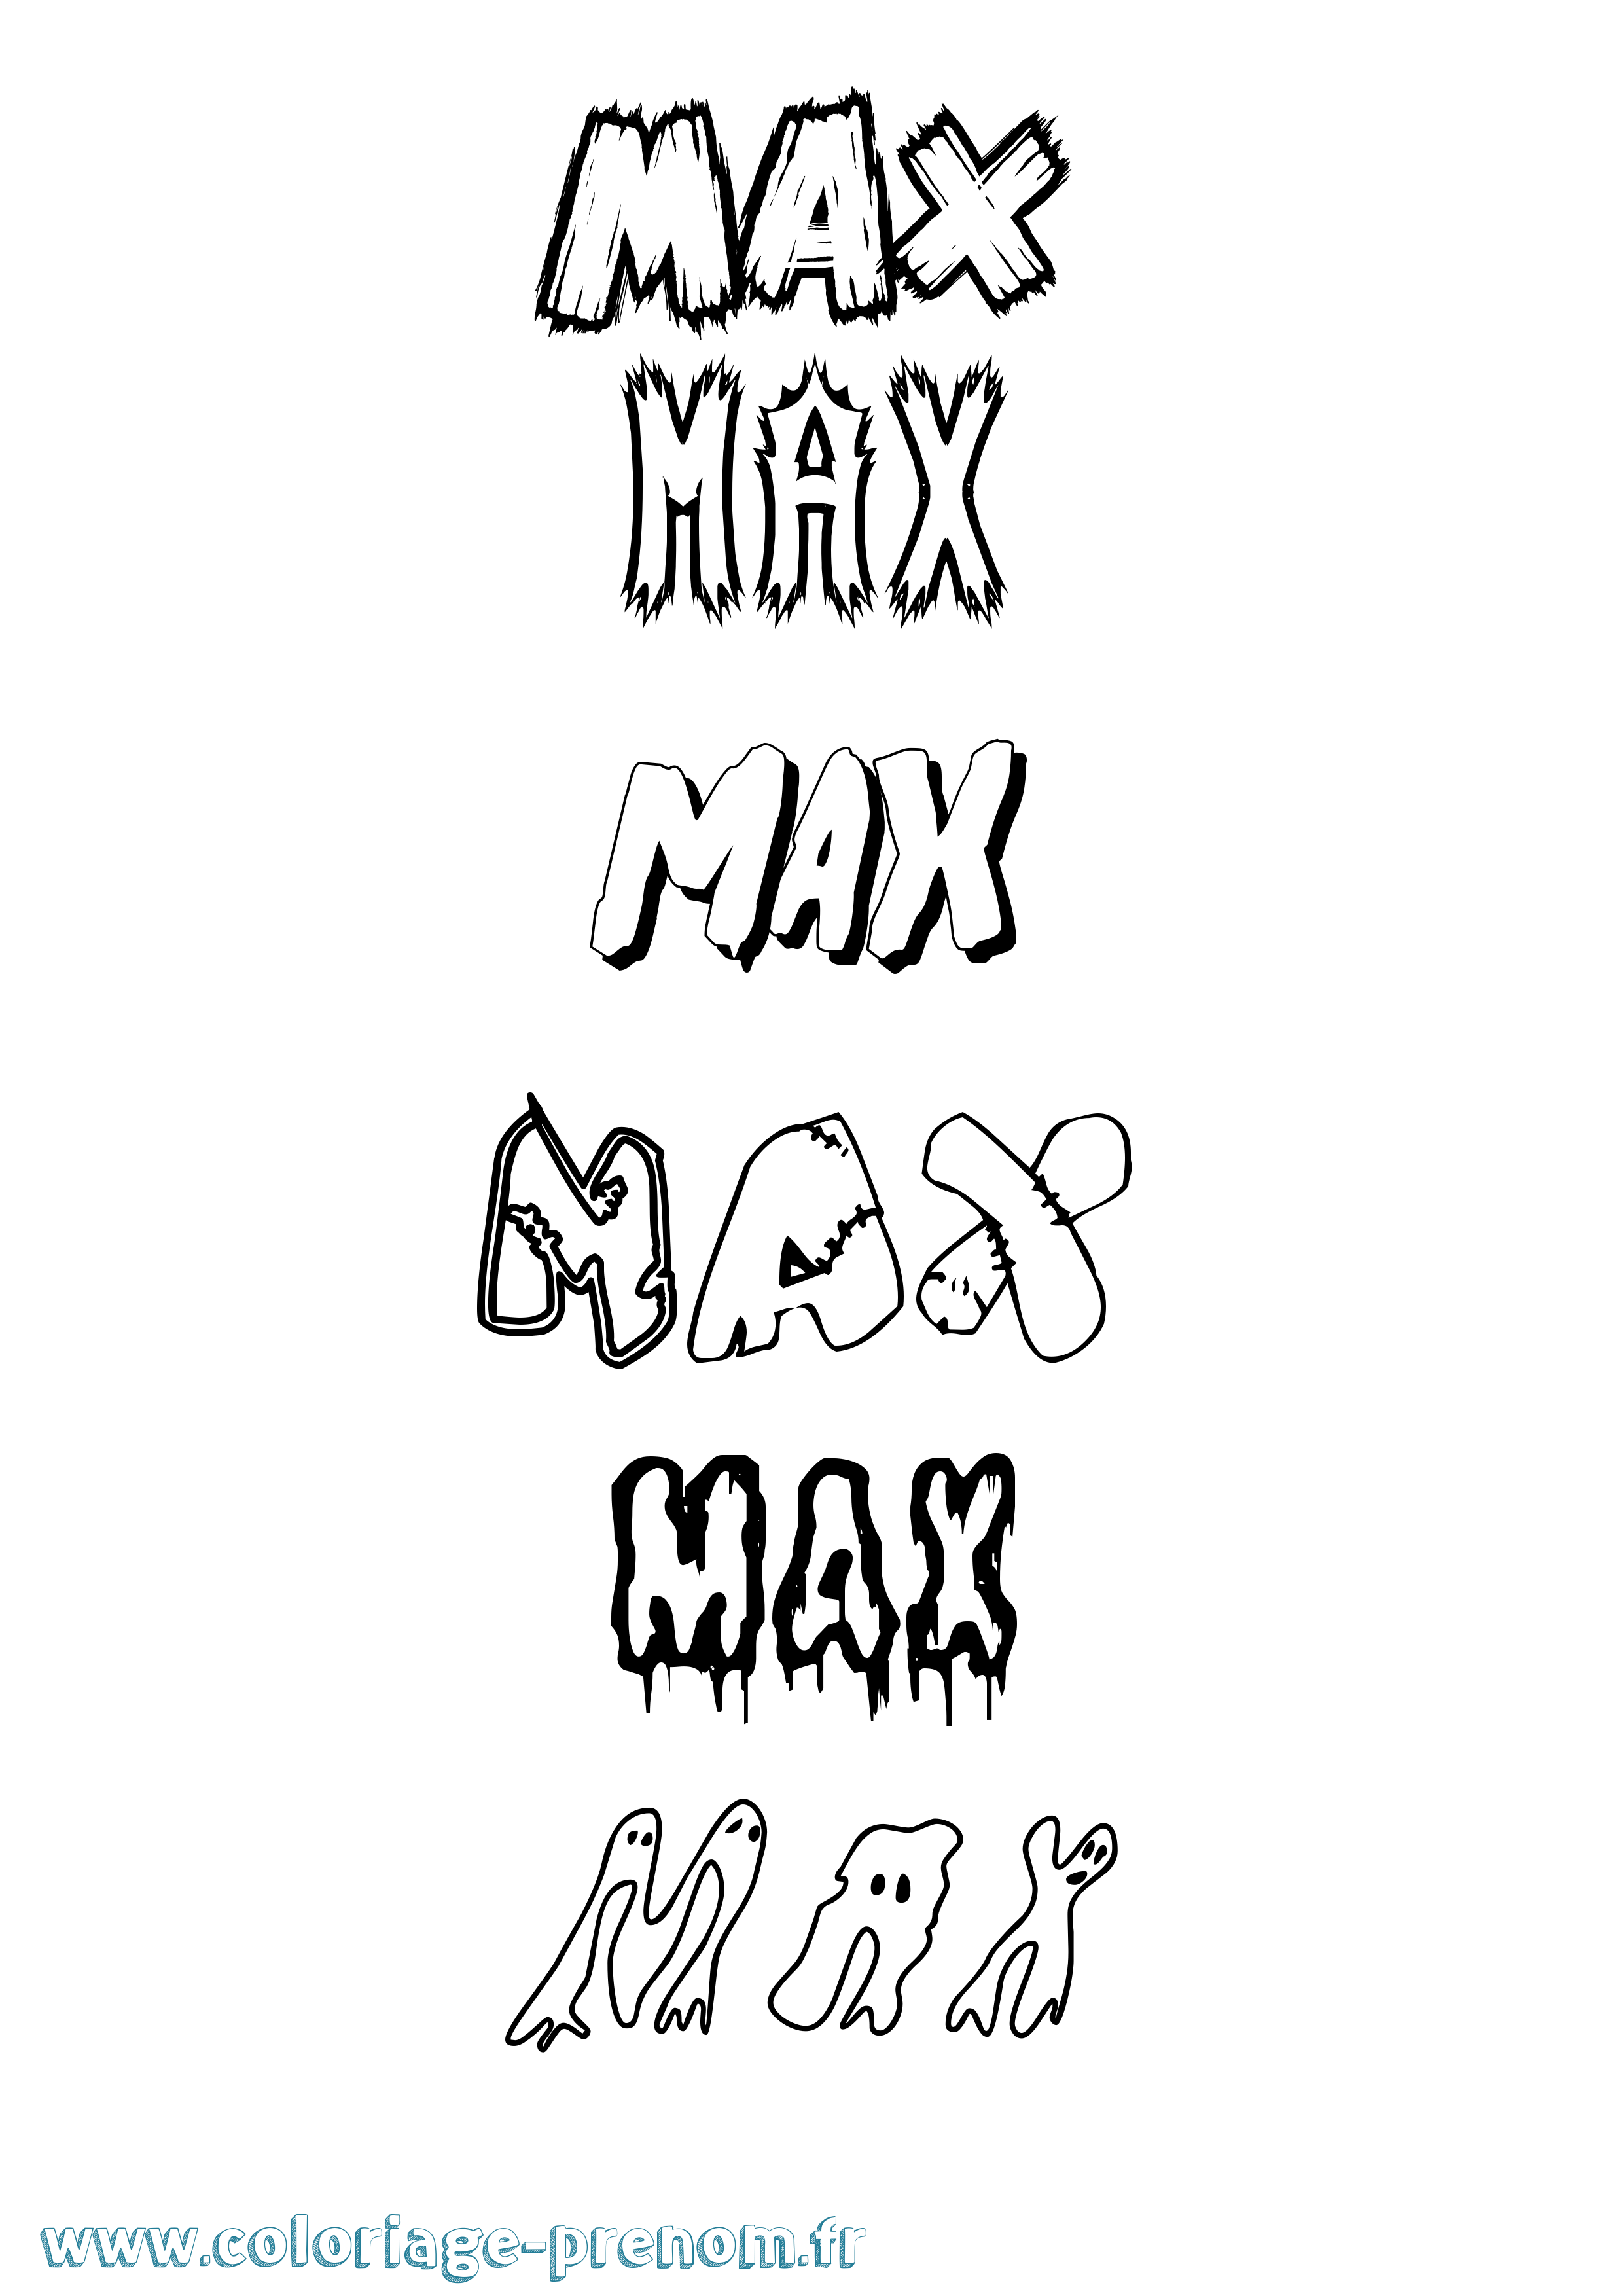 Coloriage prénom Max Frisson